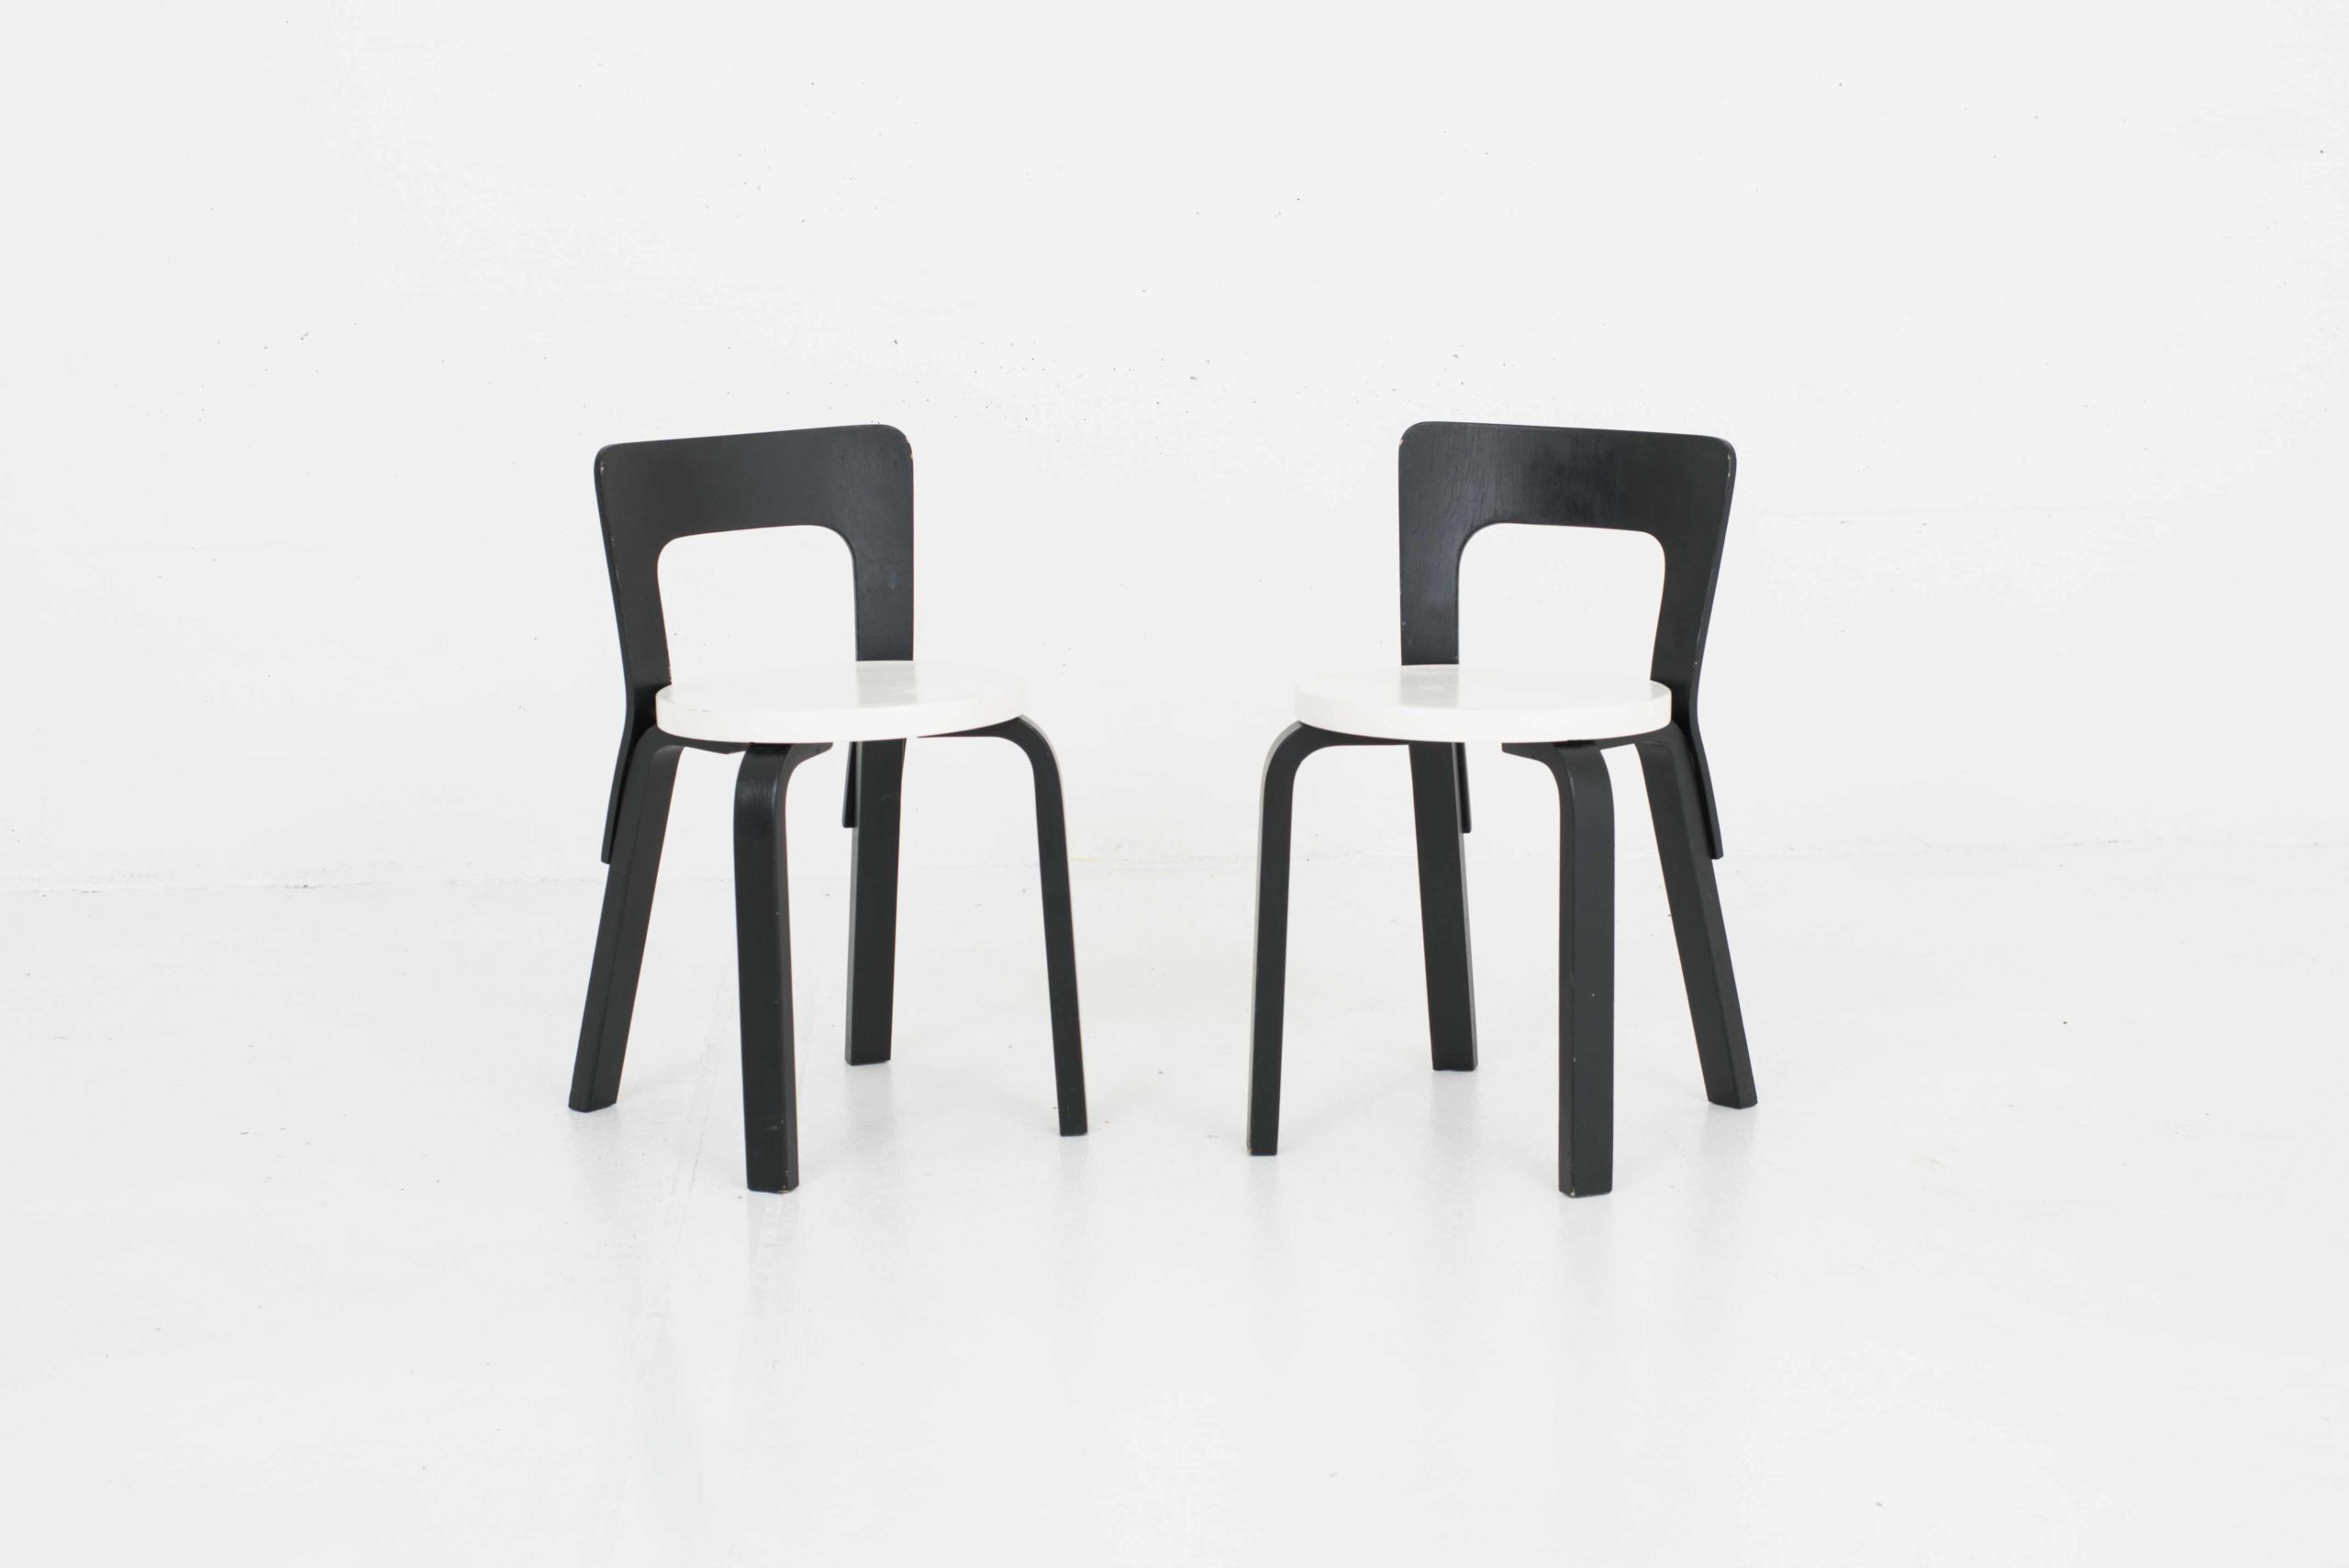 Artek Chair 65 von Alvar Aalto, im Zweierset-0